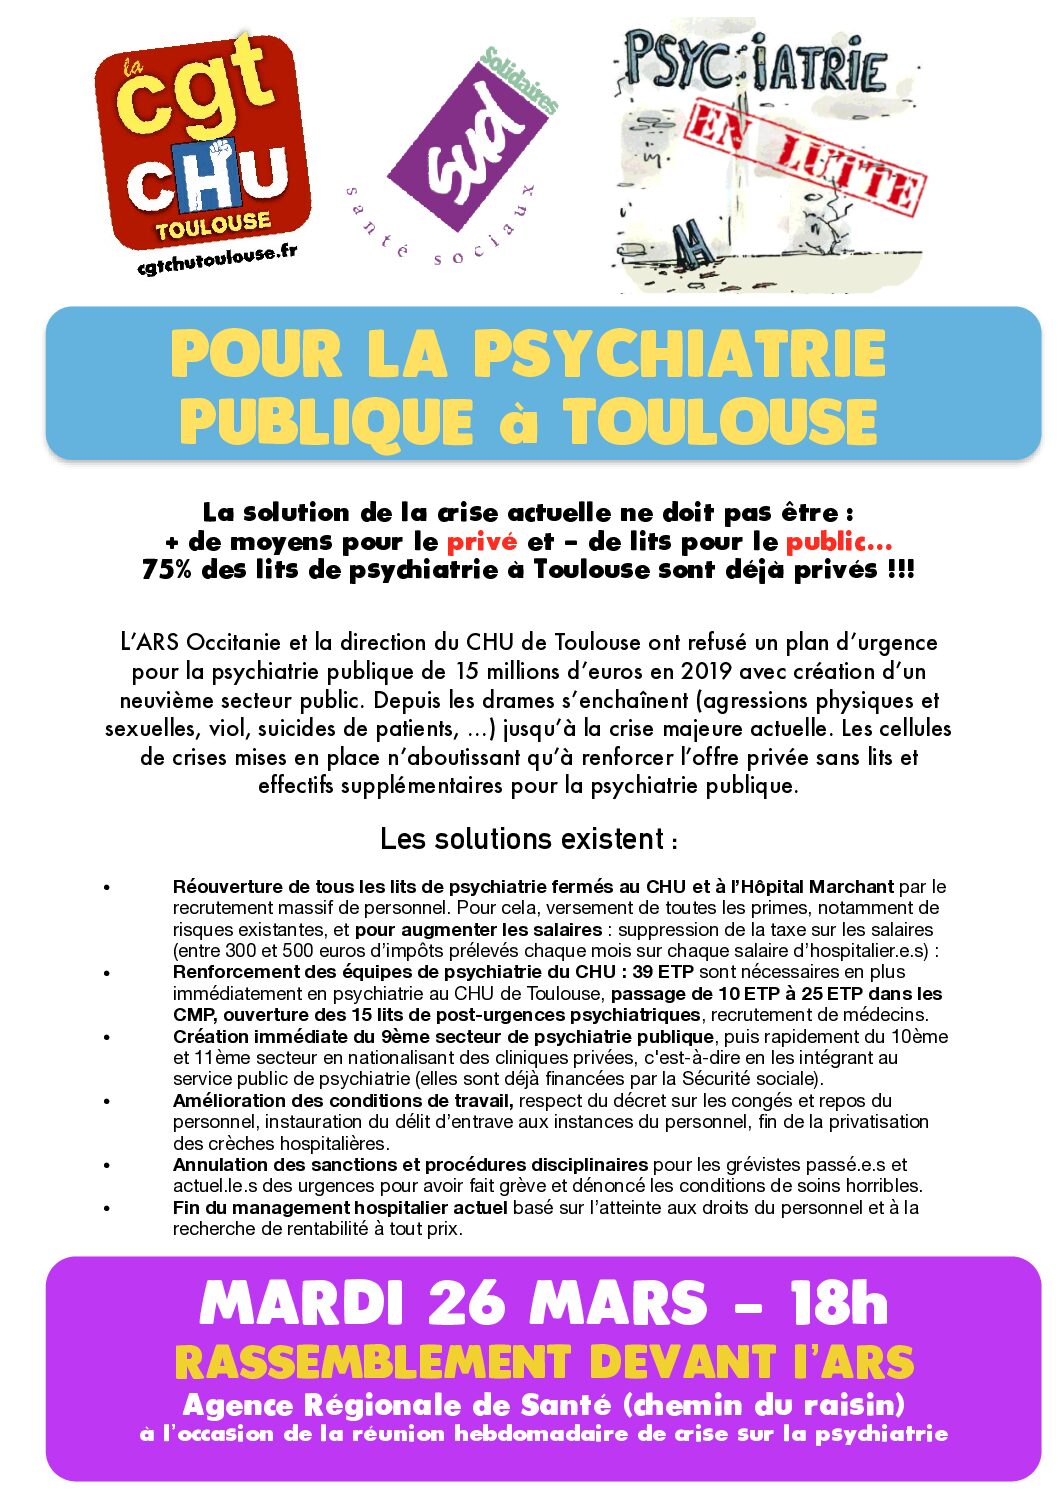 Mardi 26 mars, rassemblement pour la psychiatrie publique à Toulouse